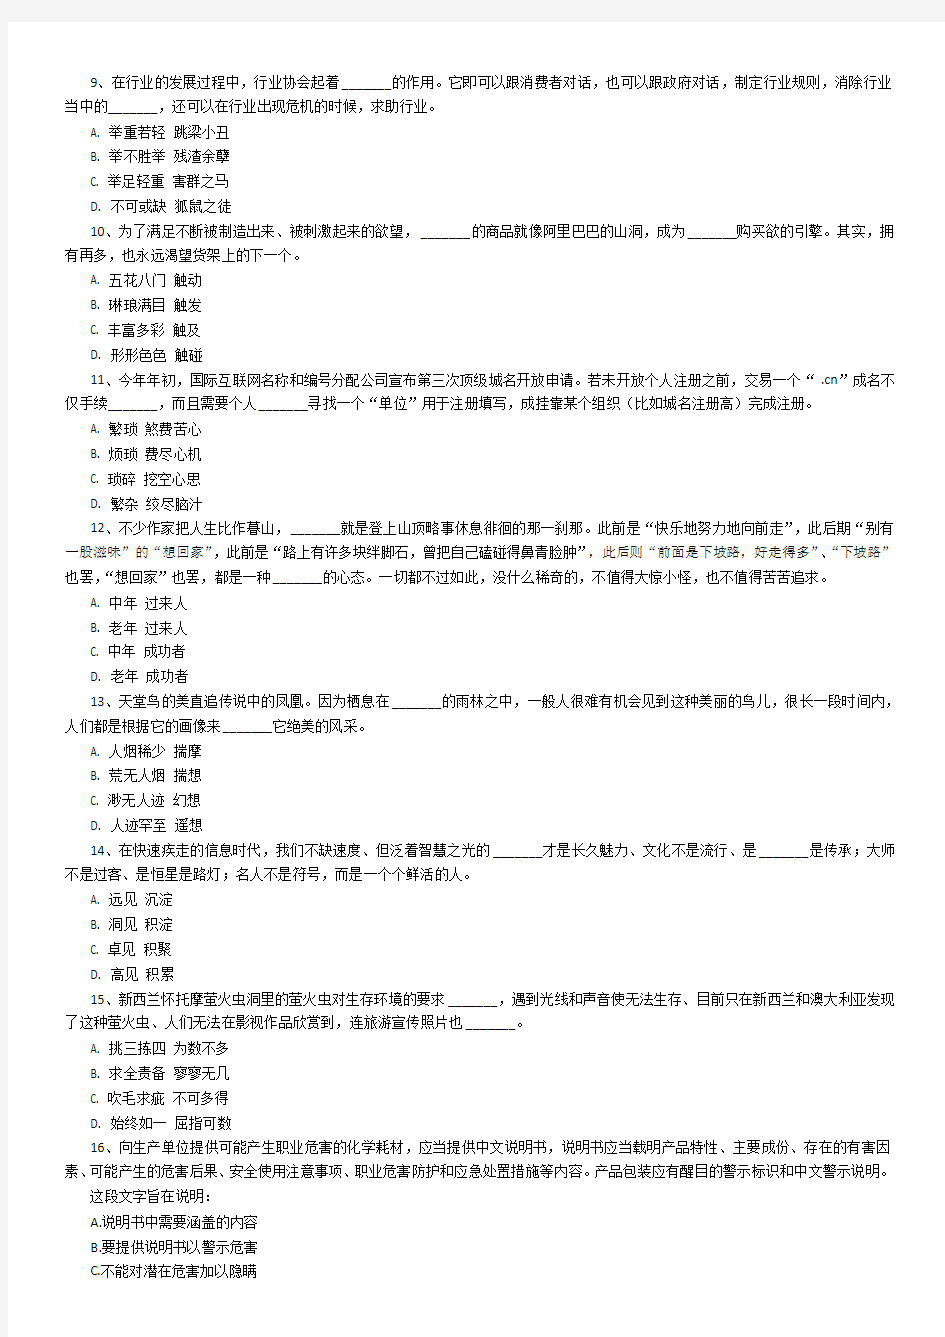 打印2012年9.15联考河南省公务员考试《行测》真题